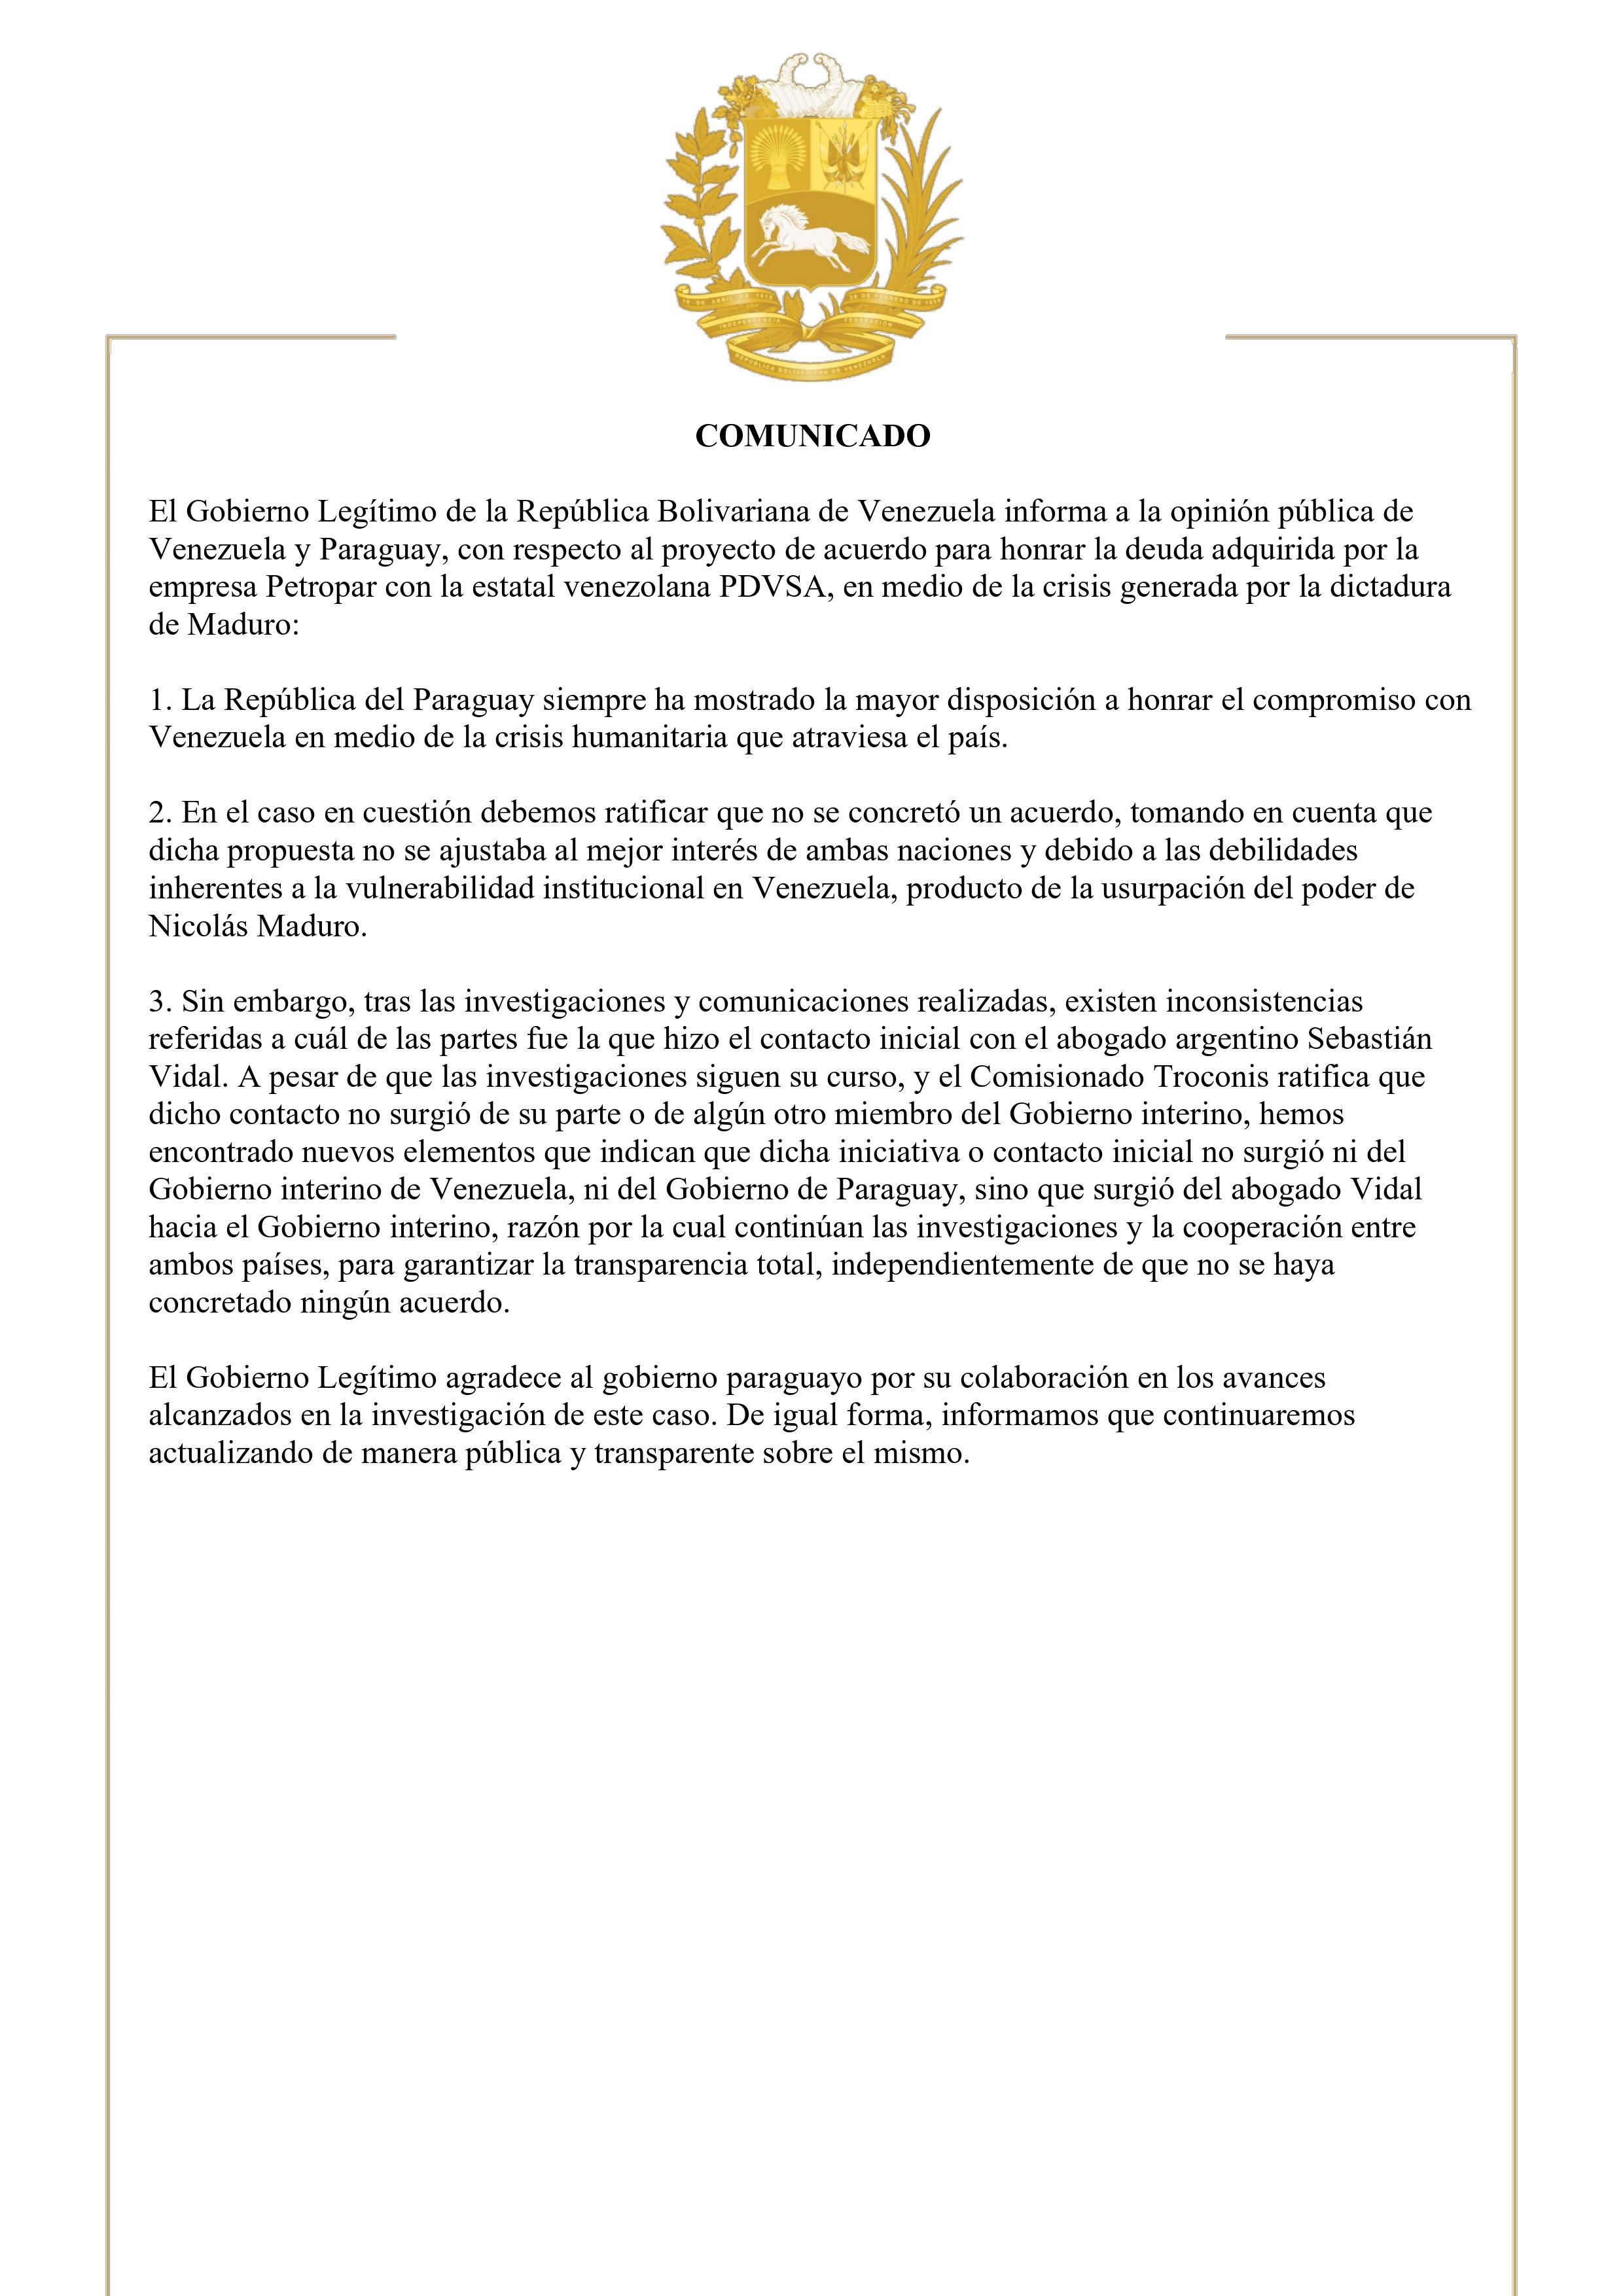 Comunicado del Gobierno Legítimo de la República Bolivariana de Venezuela.